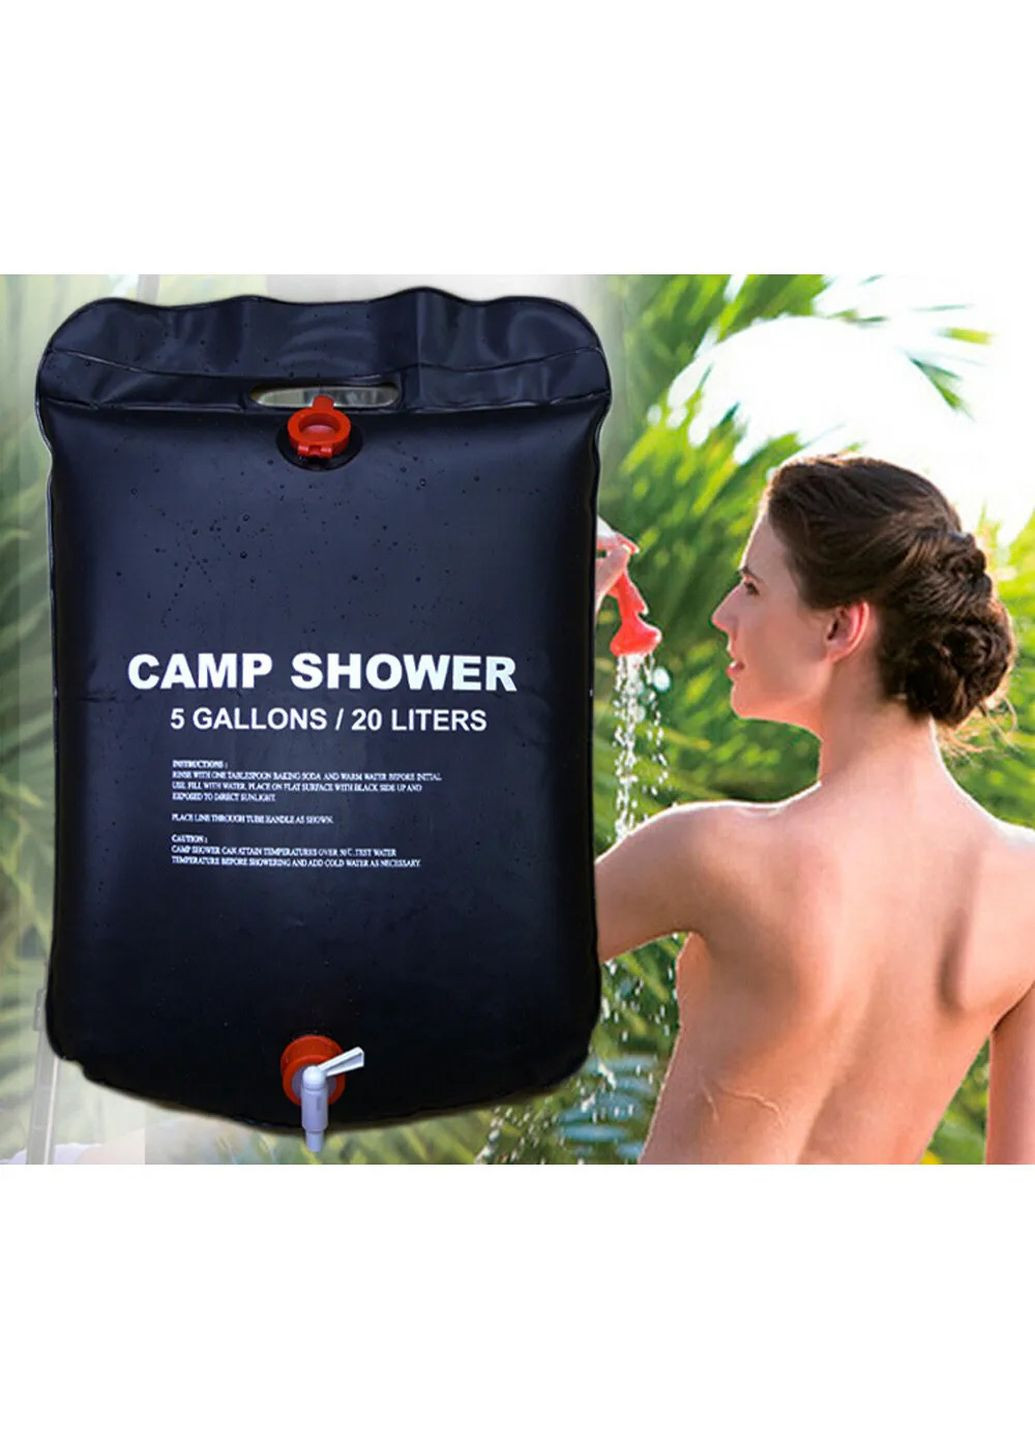 Похідний мобільний літній компактний туристичний душ для дачі авто кемпінгу Easy Camp (262519768)